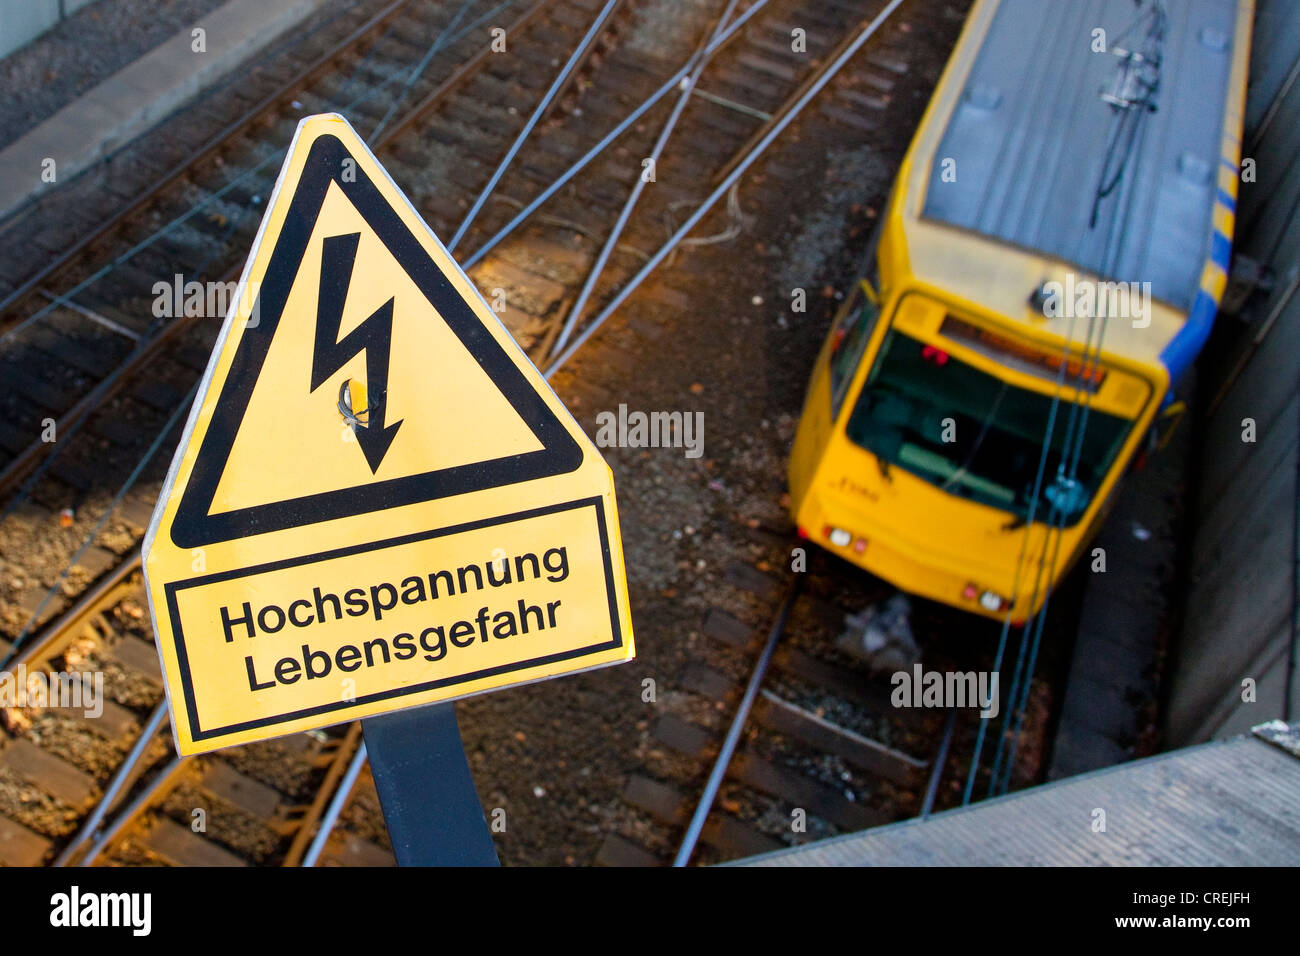 Schilder, Schriftzug "Hochspannung Lebensgefahr", Deutsch für "Hochspannung Lebensgefahr", auf einer Eisenbahnlinie von der s-Bahn Stockfoto